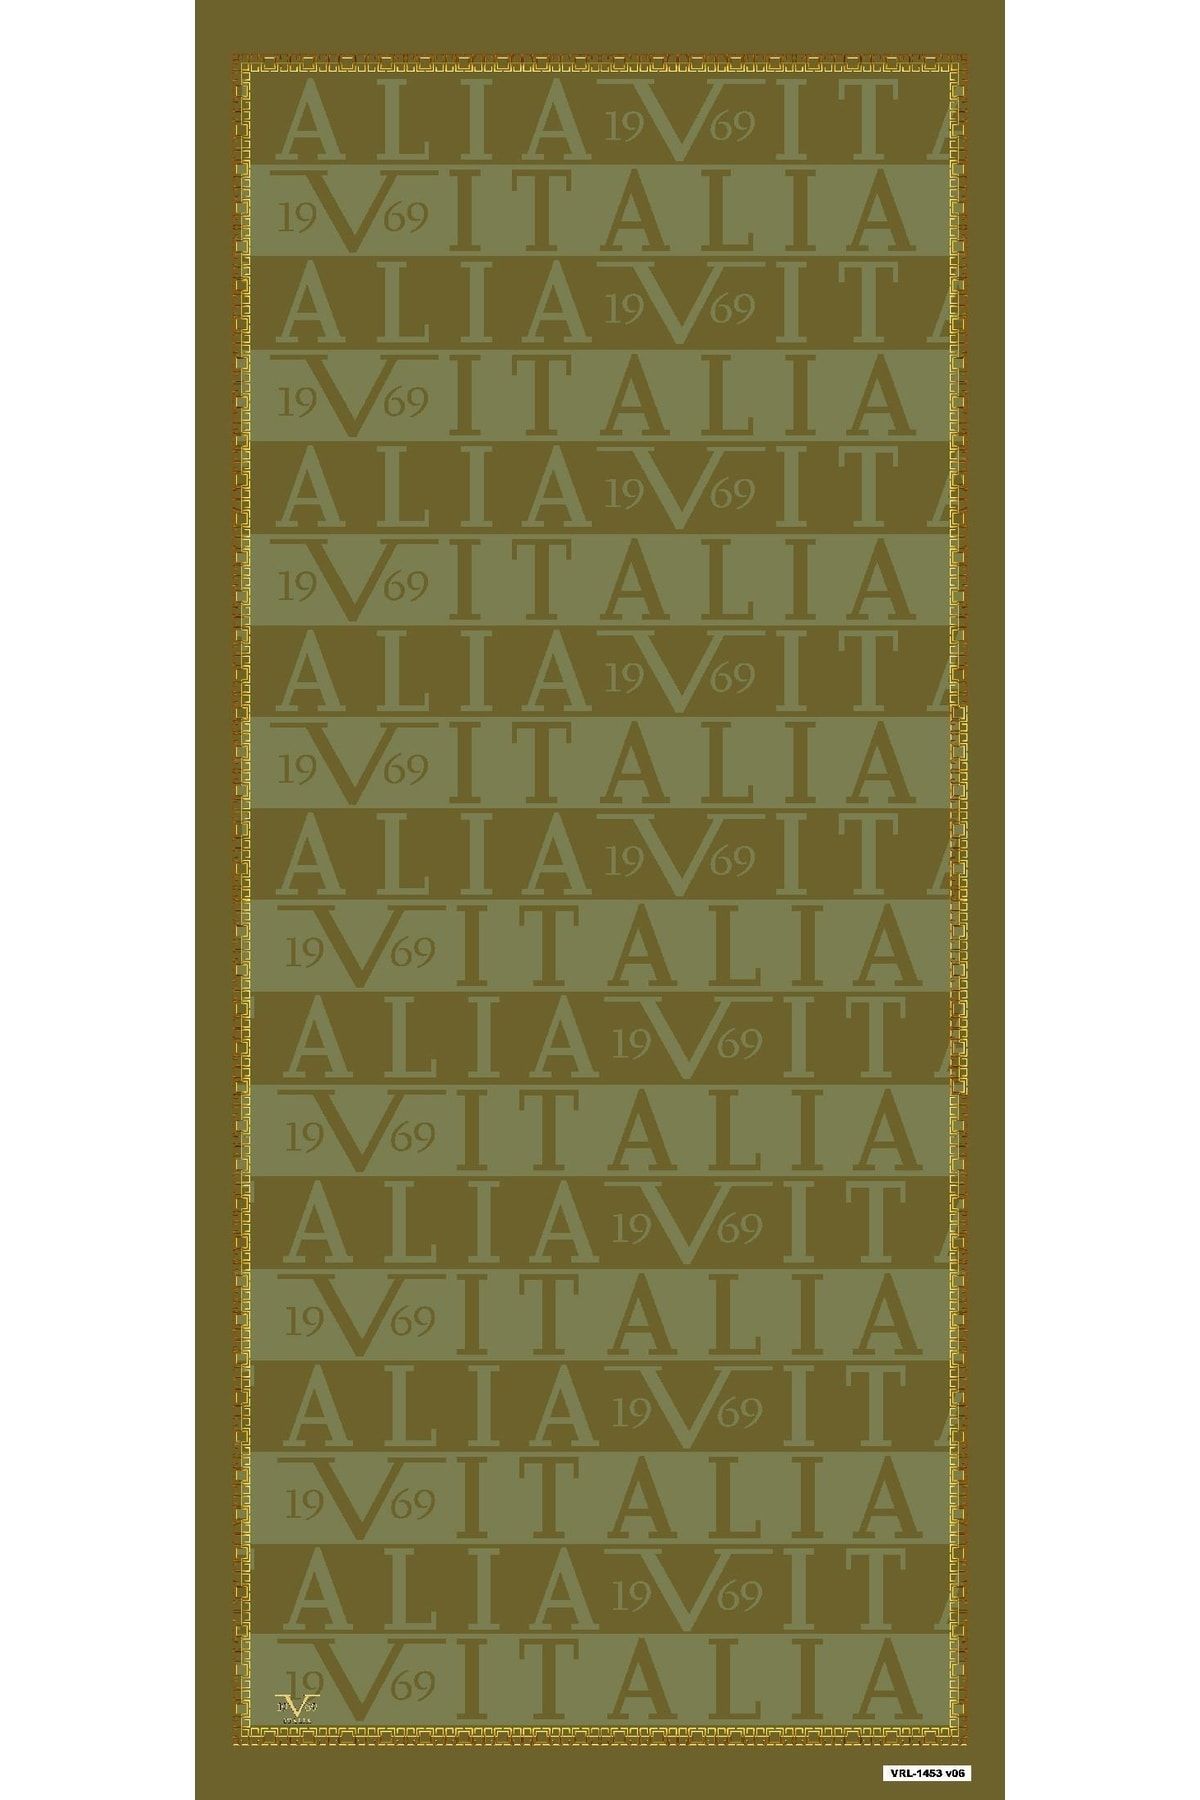 19V69 ITALIA Logolu Desen Pavia Seri Şal Askısı Ve Hediyelik Seti Ile Birlikte 90x200 Cm